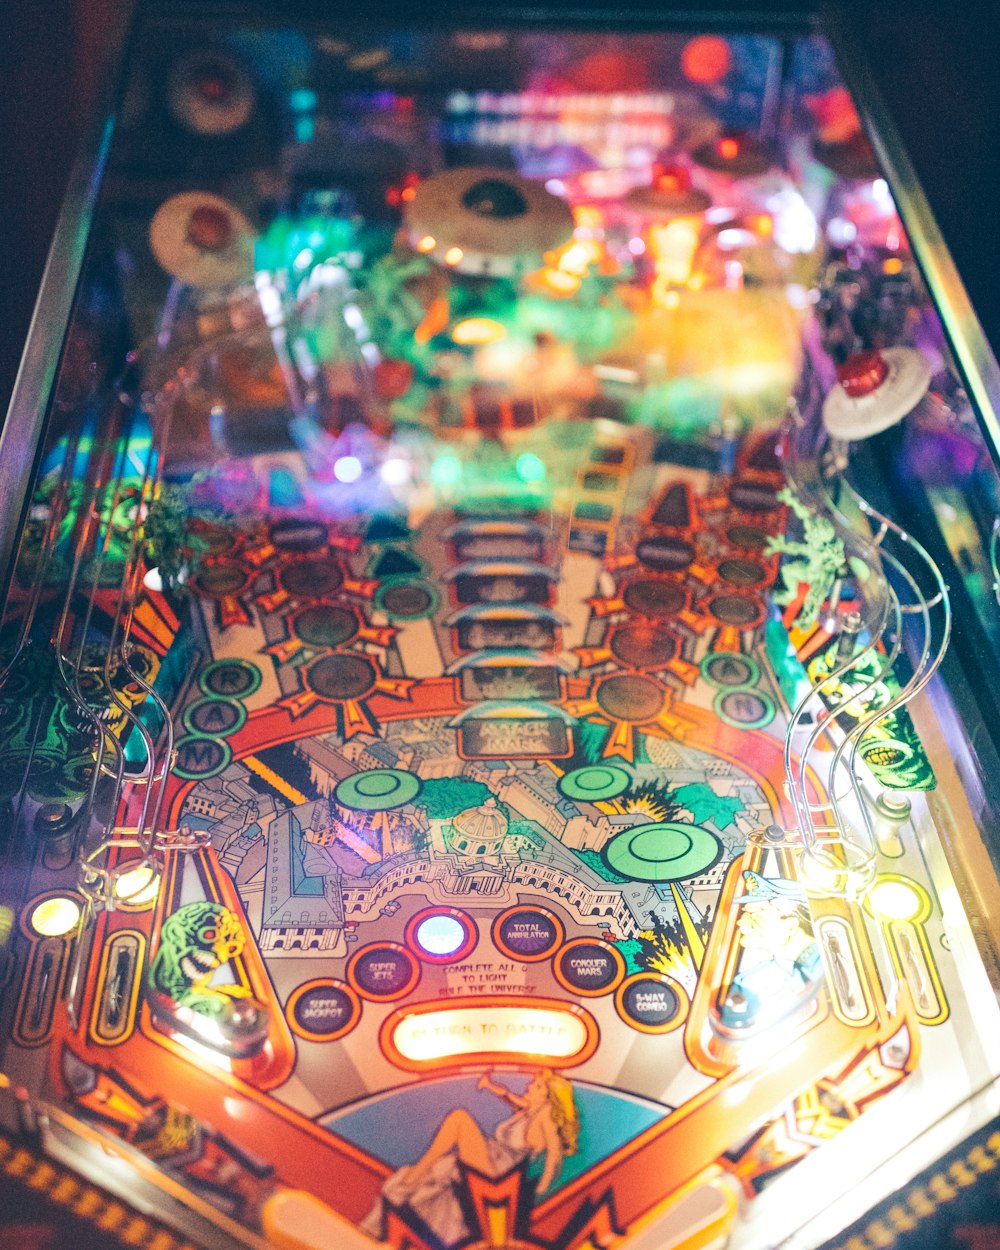 Fotografia de close-up da máquina de pinball azul e multicolorida